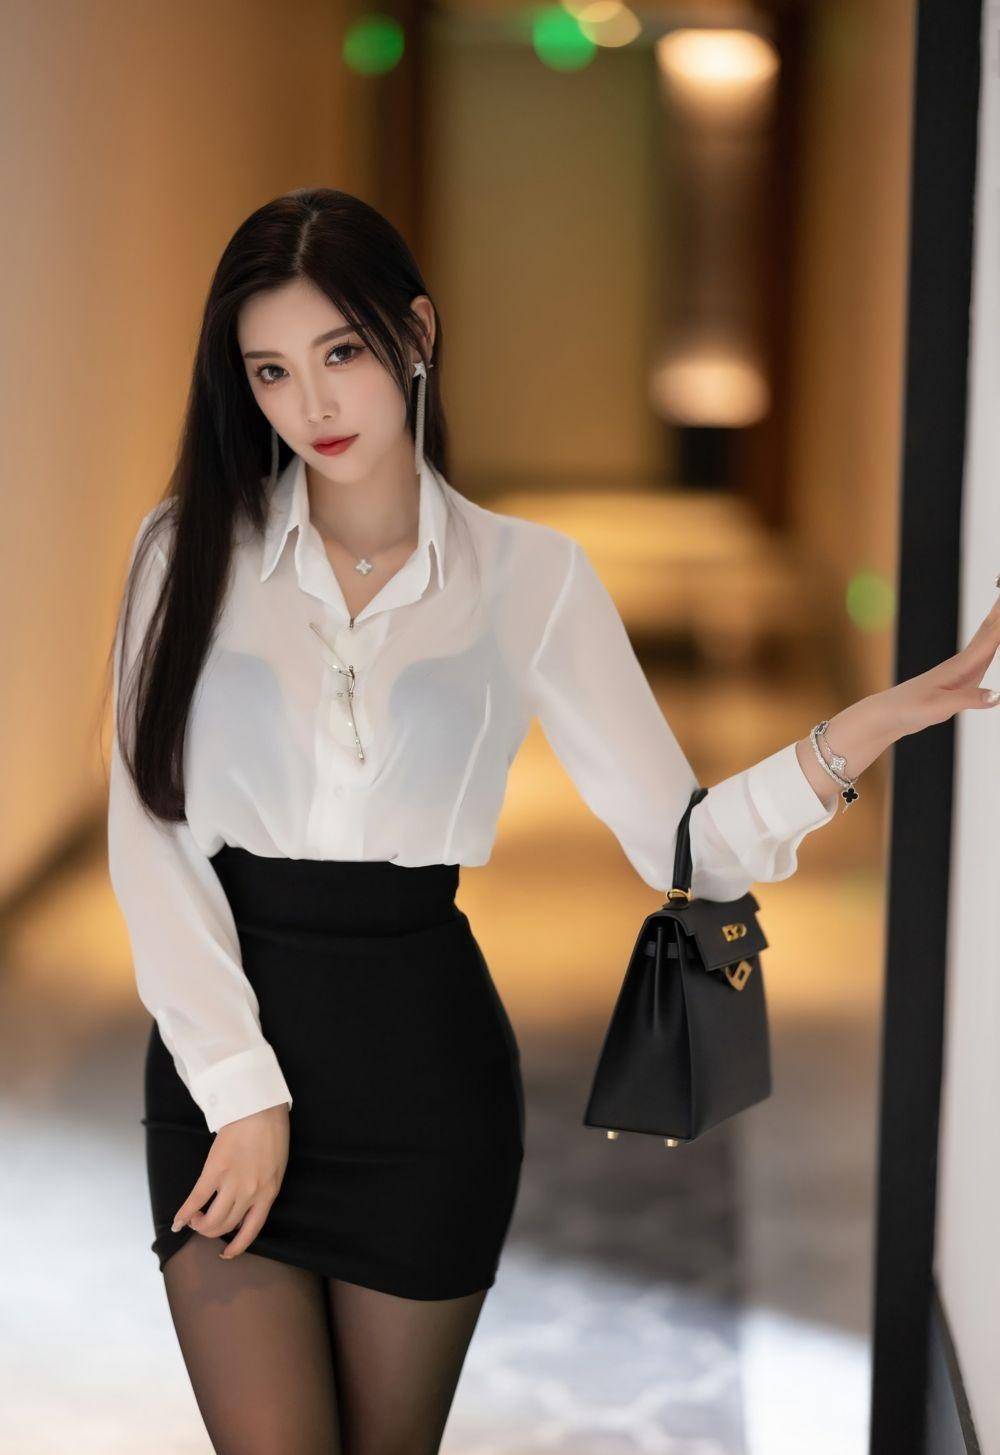 白色衬衫 黑色短裙搭配魅惑黑丝 尖头高跟鞋,完美的身段一览无余